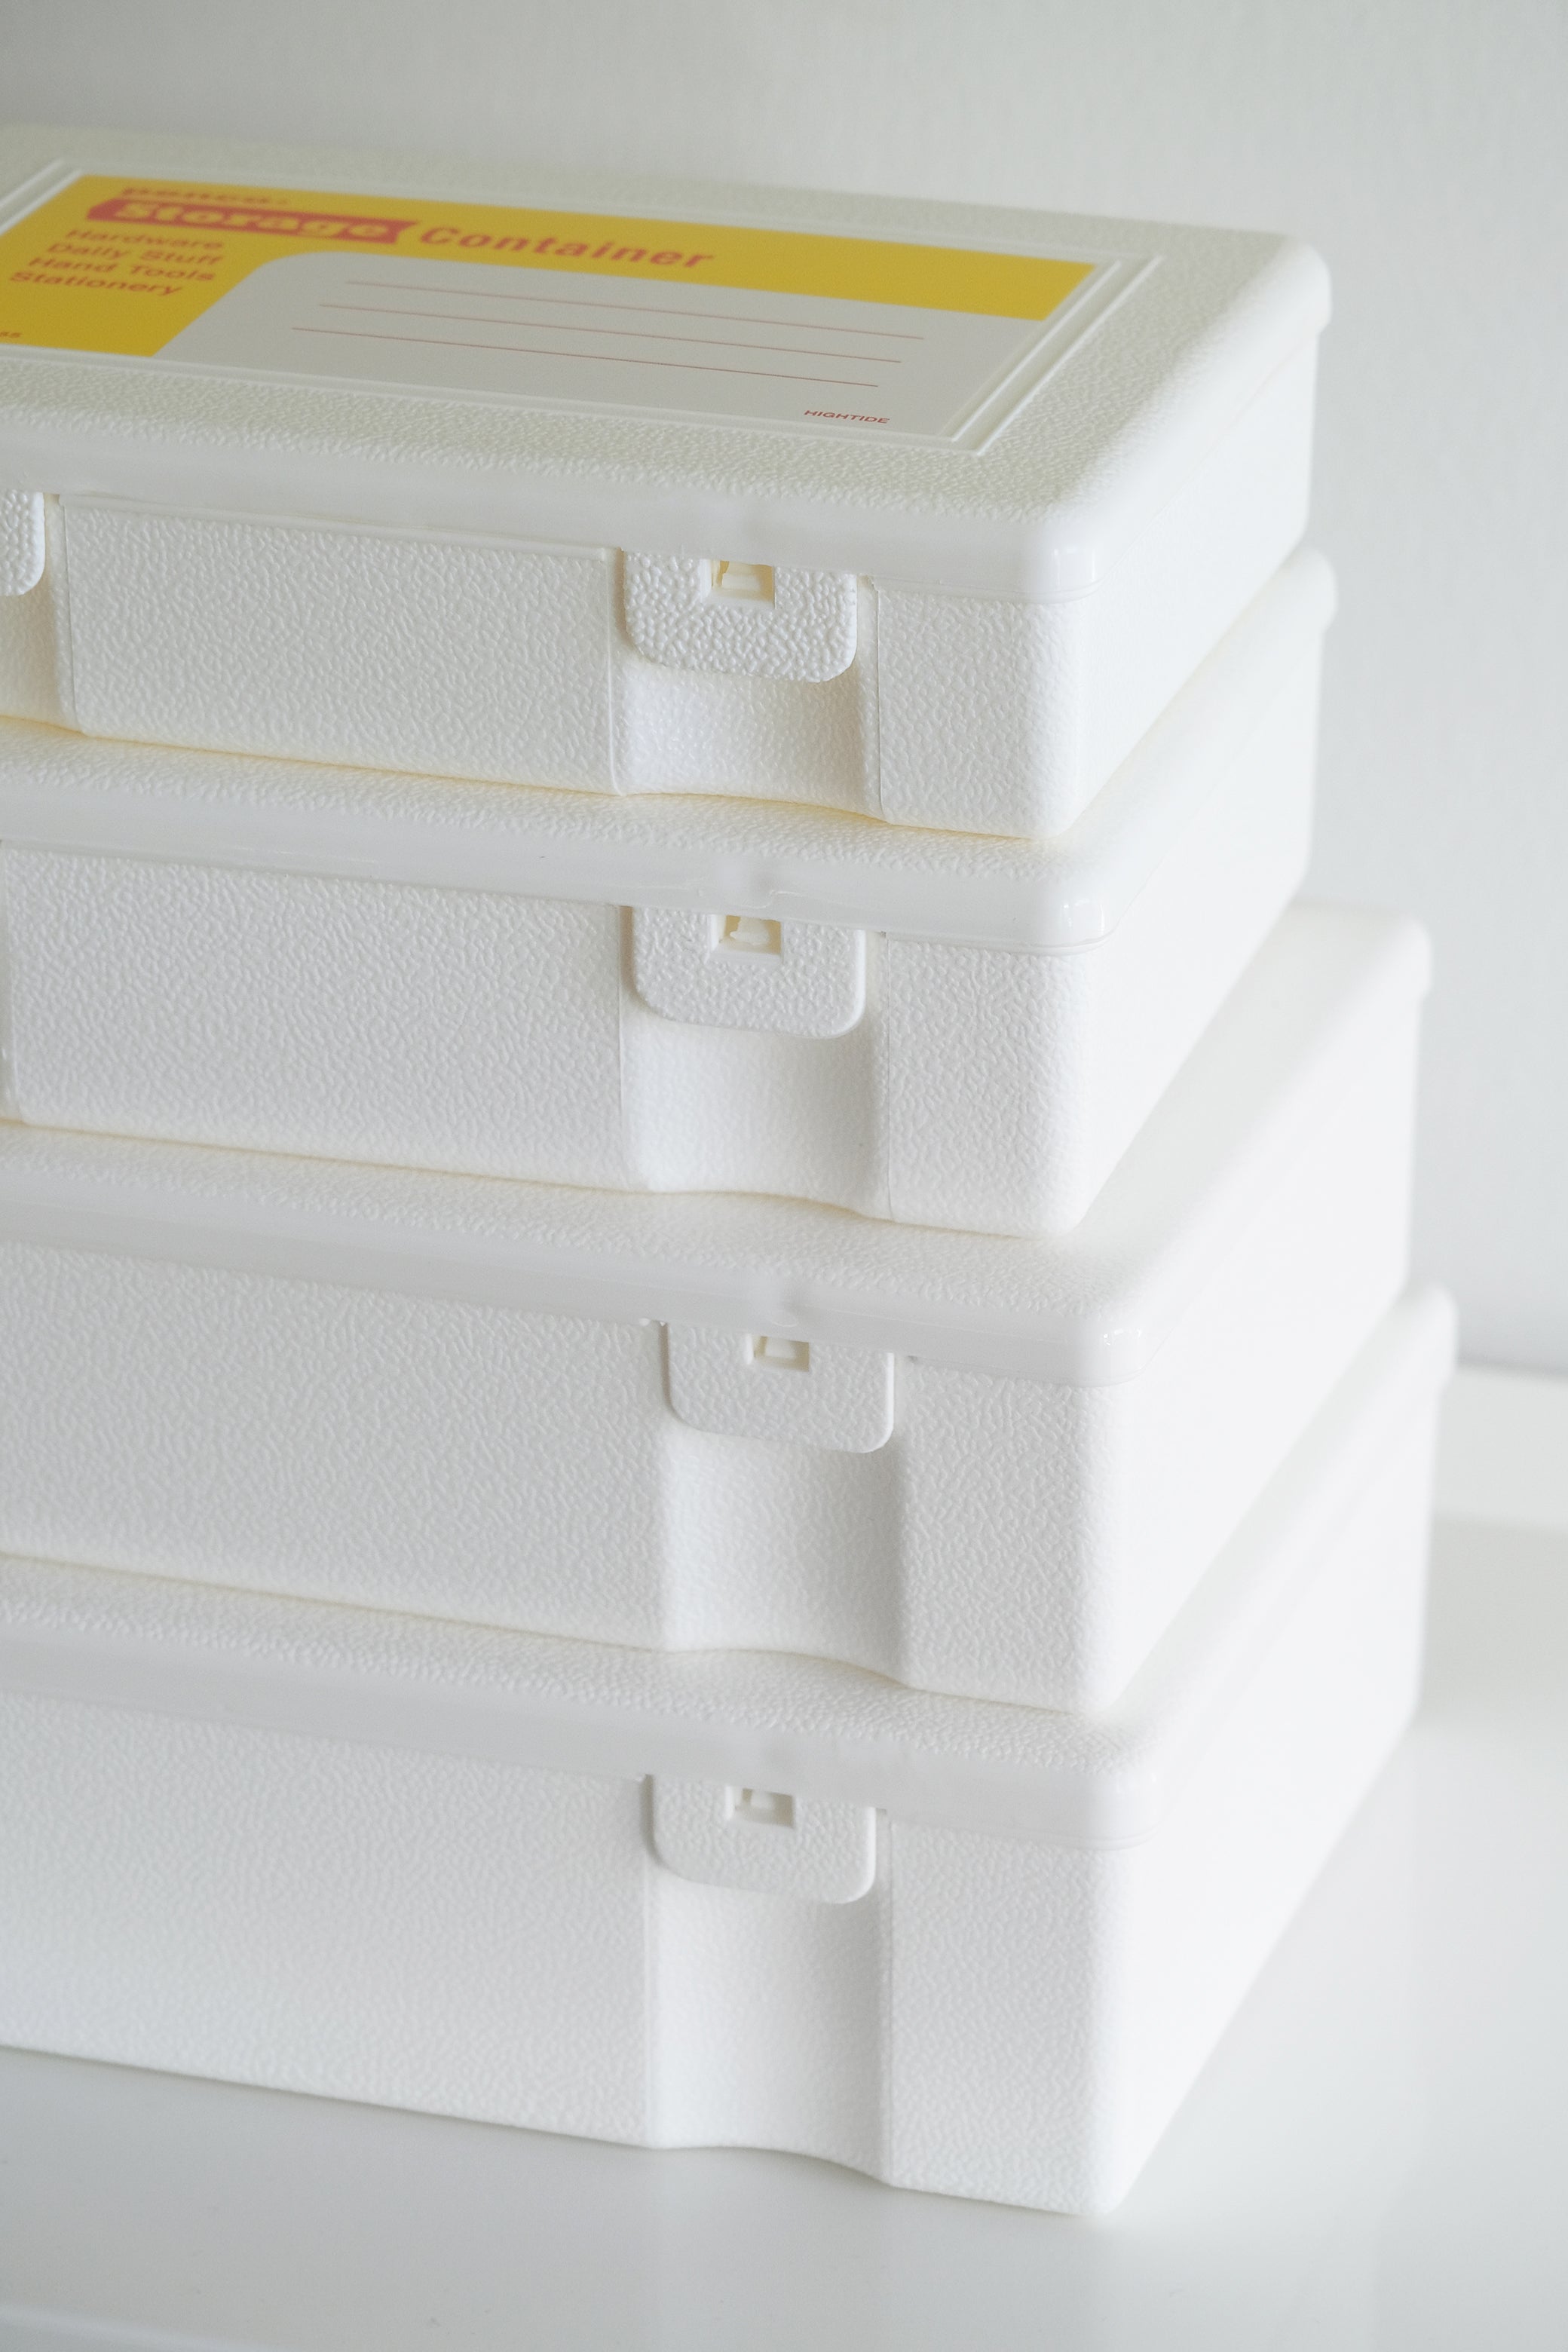 4 x storage container white-Penco-KIOSK48TH